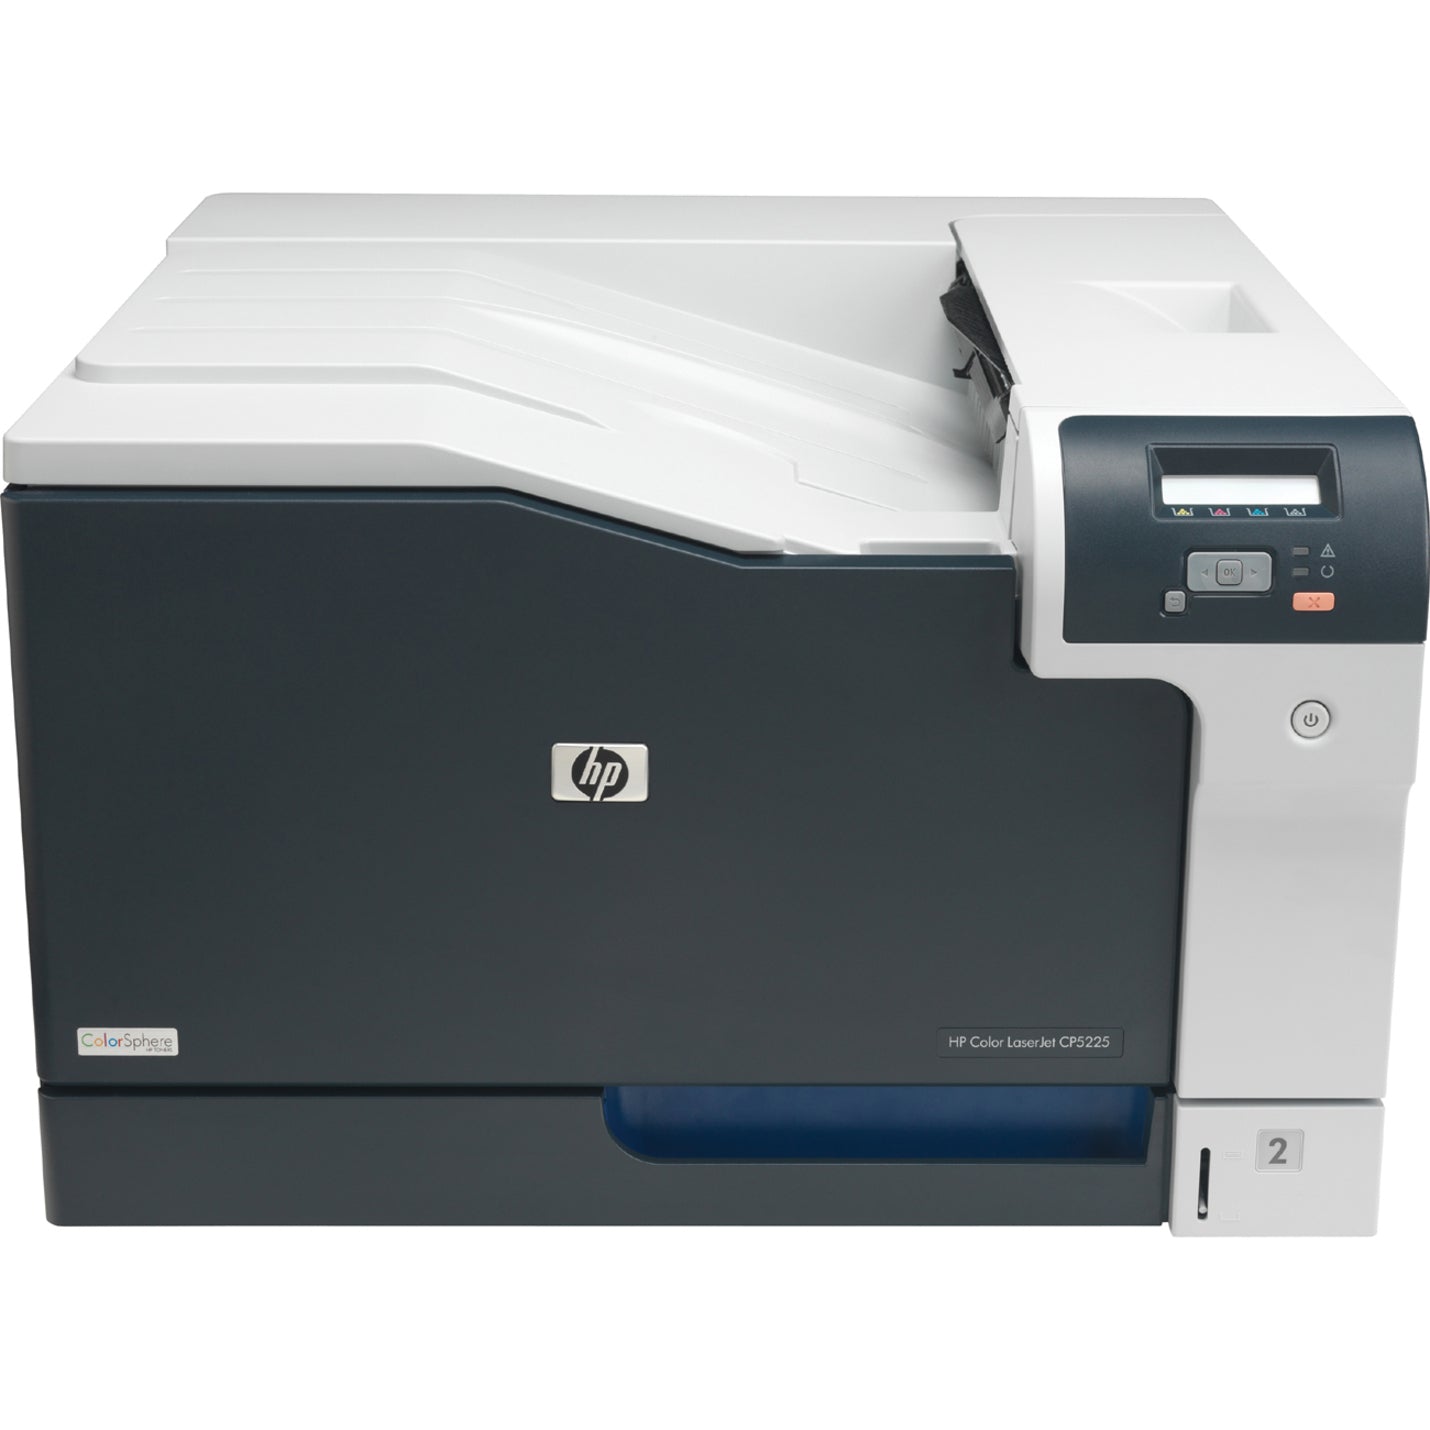 HP CE712AR#BGJ Color LaserJet CP5225DN Desktop Laser Printer - Refurbished